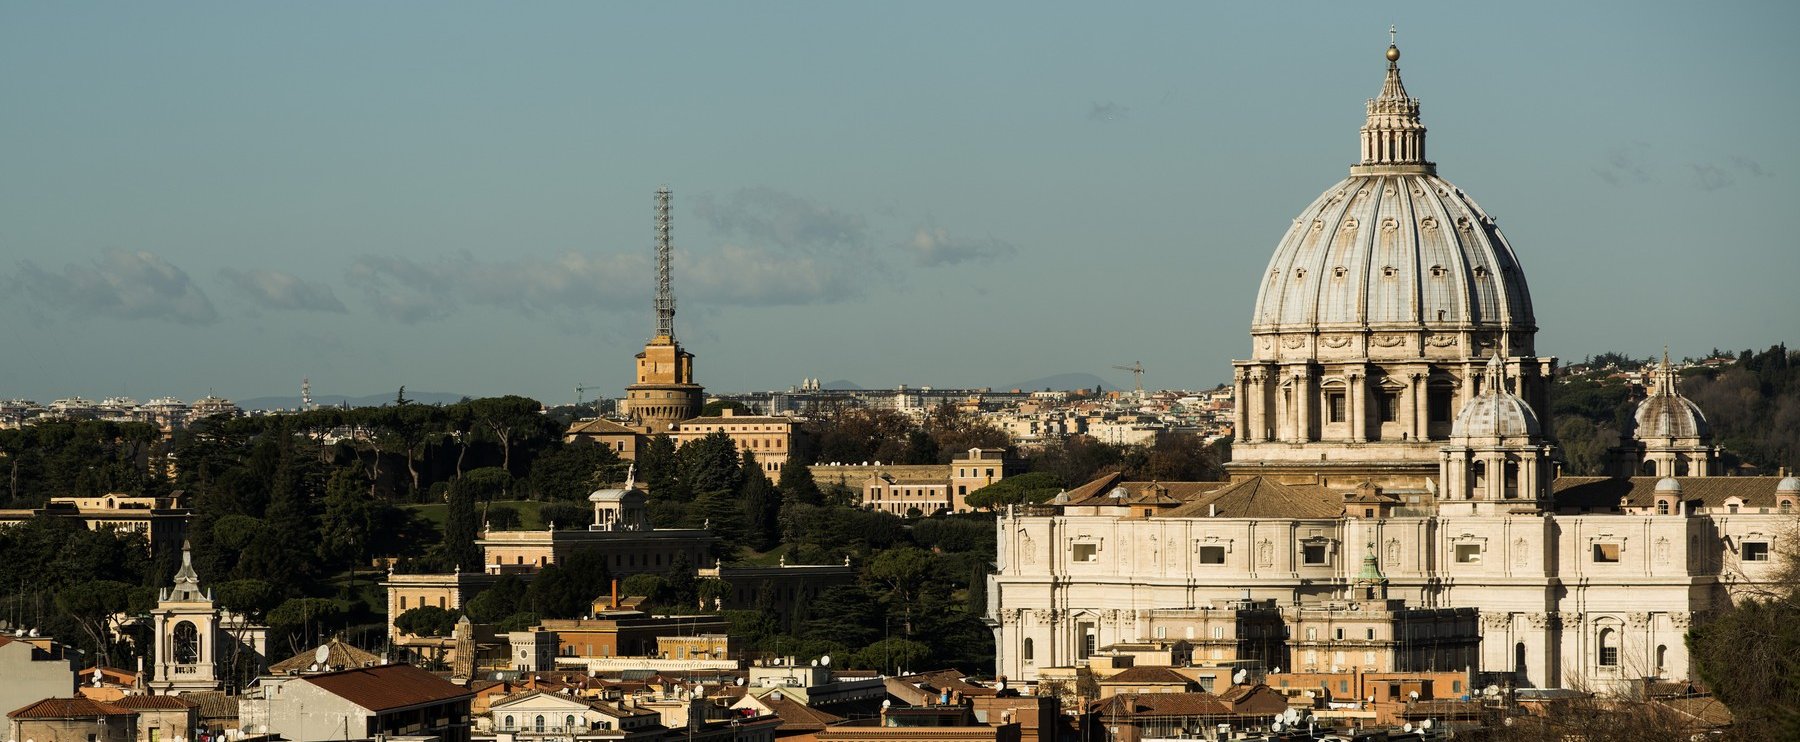 Gigantikus dolog rejtőzik a Vatikán alatt, a Szent Péter-bazilikát erre építették rá